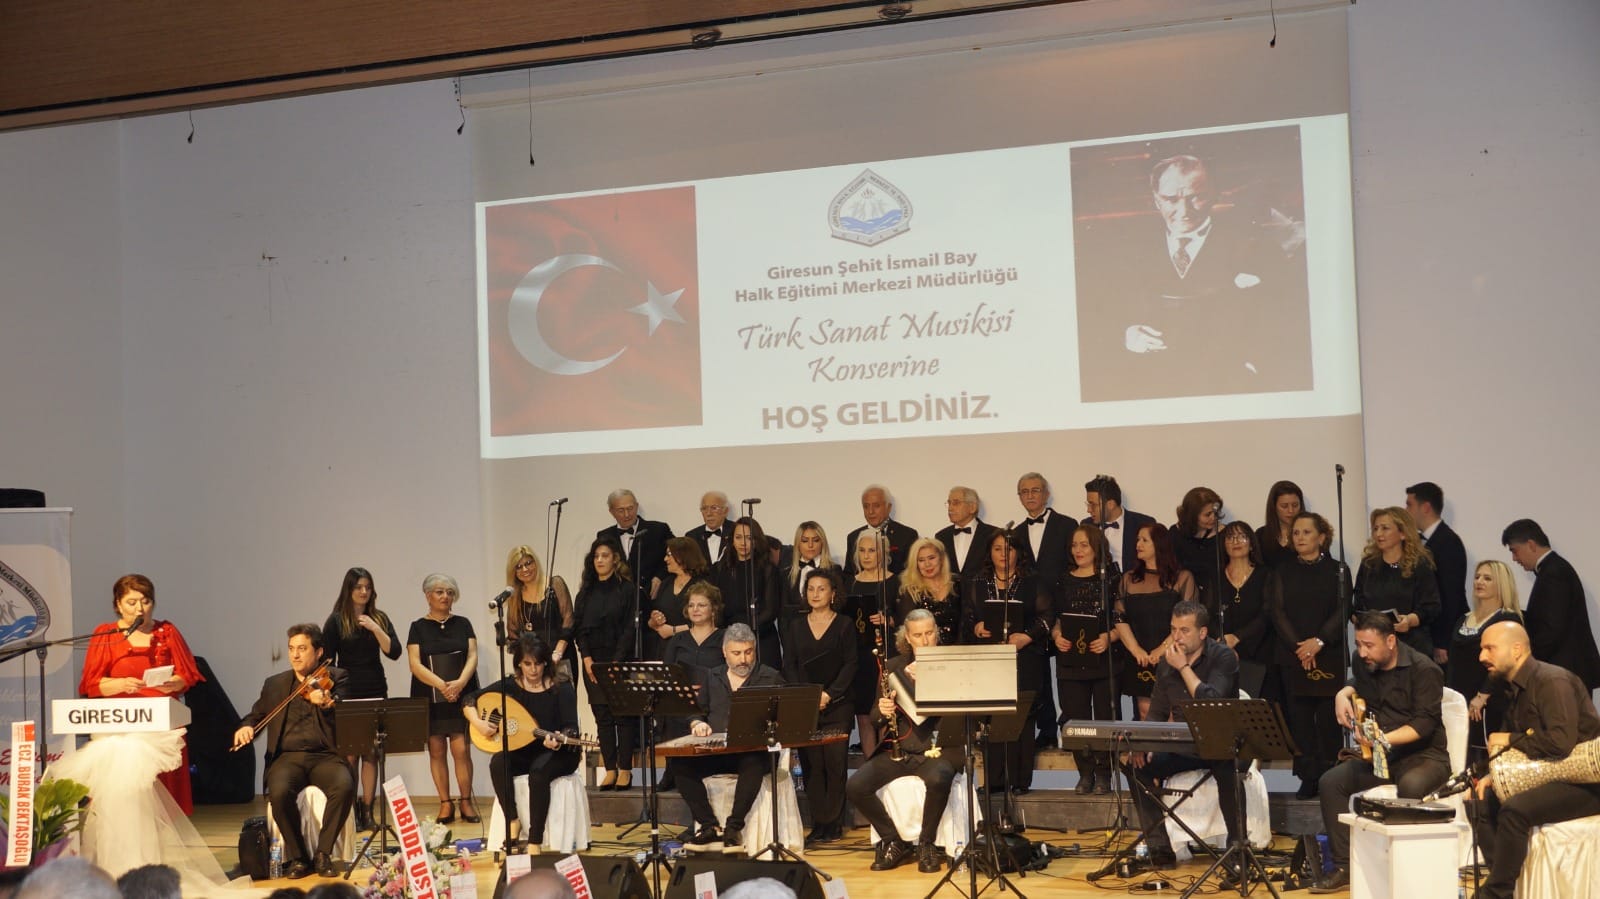 Giresun Şehit İsmail Bay Halk Eğitimi Merkezi Tarafından Türk Müziği Konseri Düzenlendi